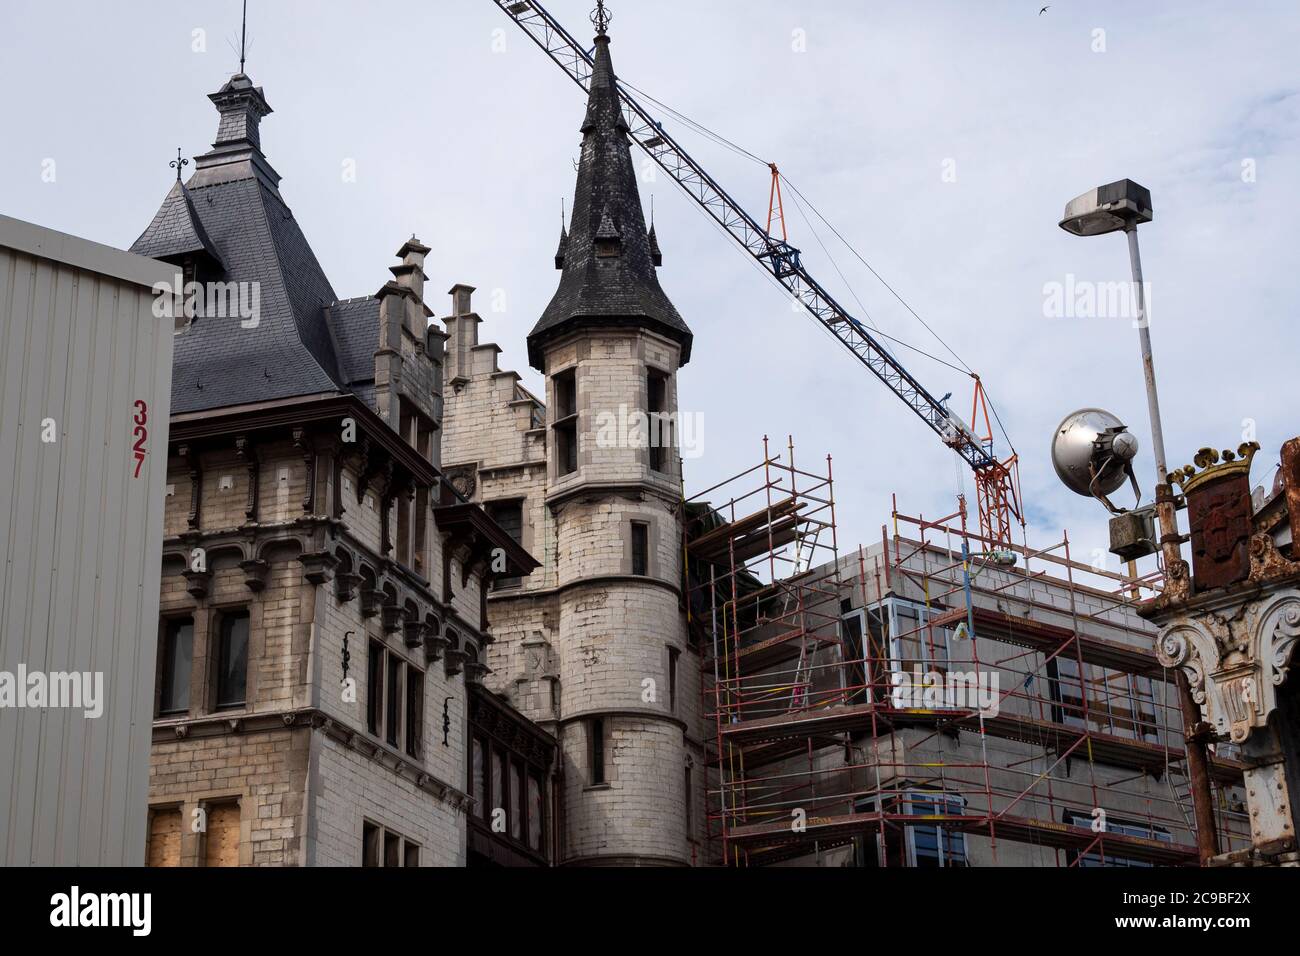 Anvers, Belgique, 19 juillet 2020, arrière du château Het Steen avec grue et échafaudage pour les travaux de rénovation Banque D'Images